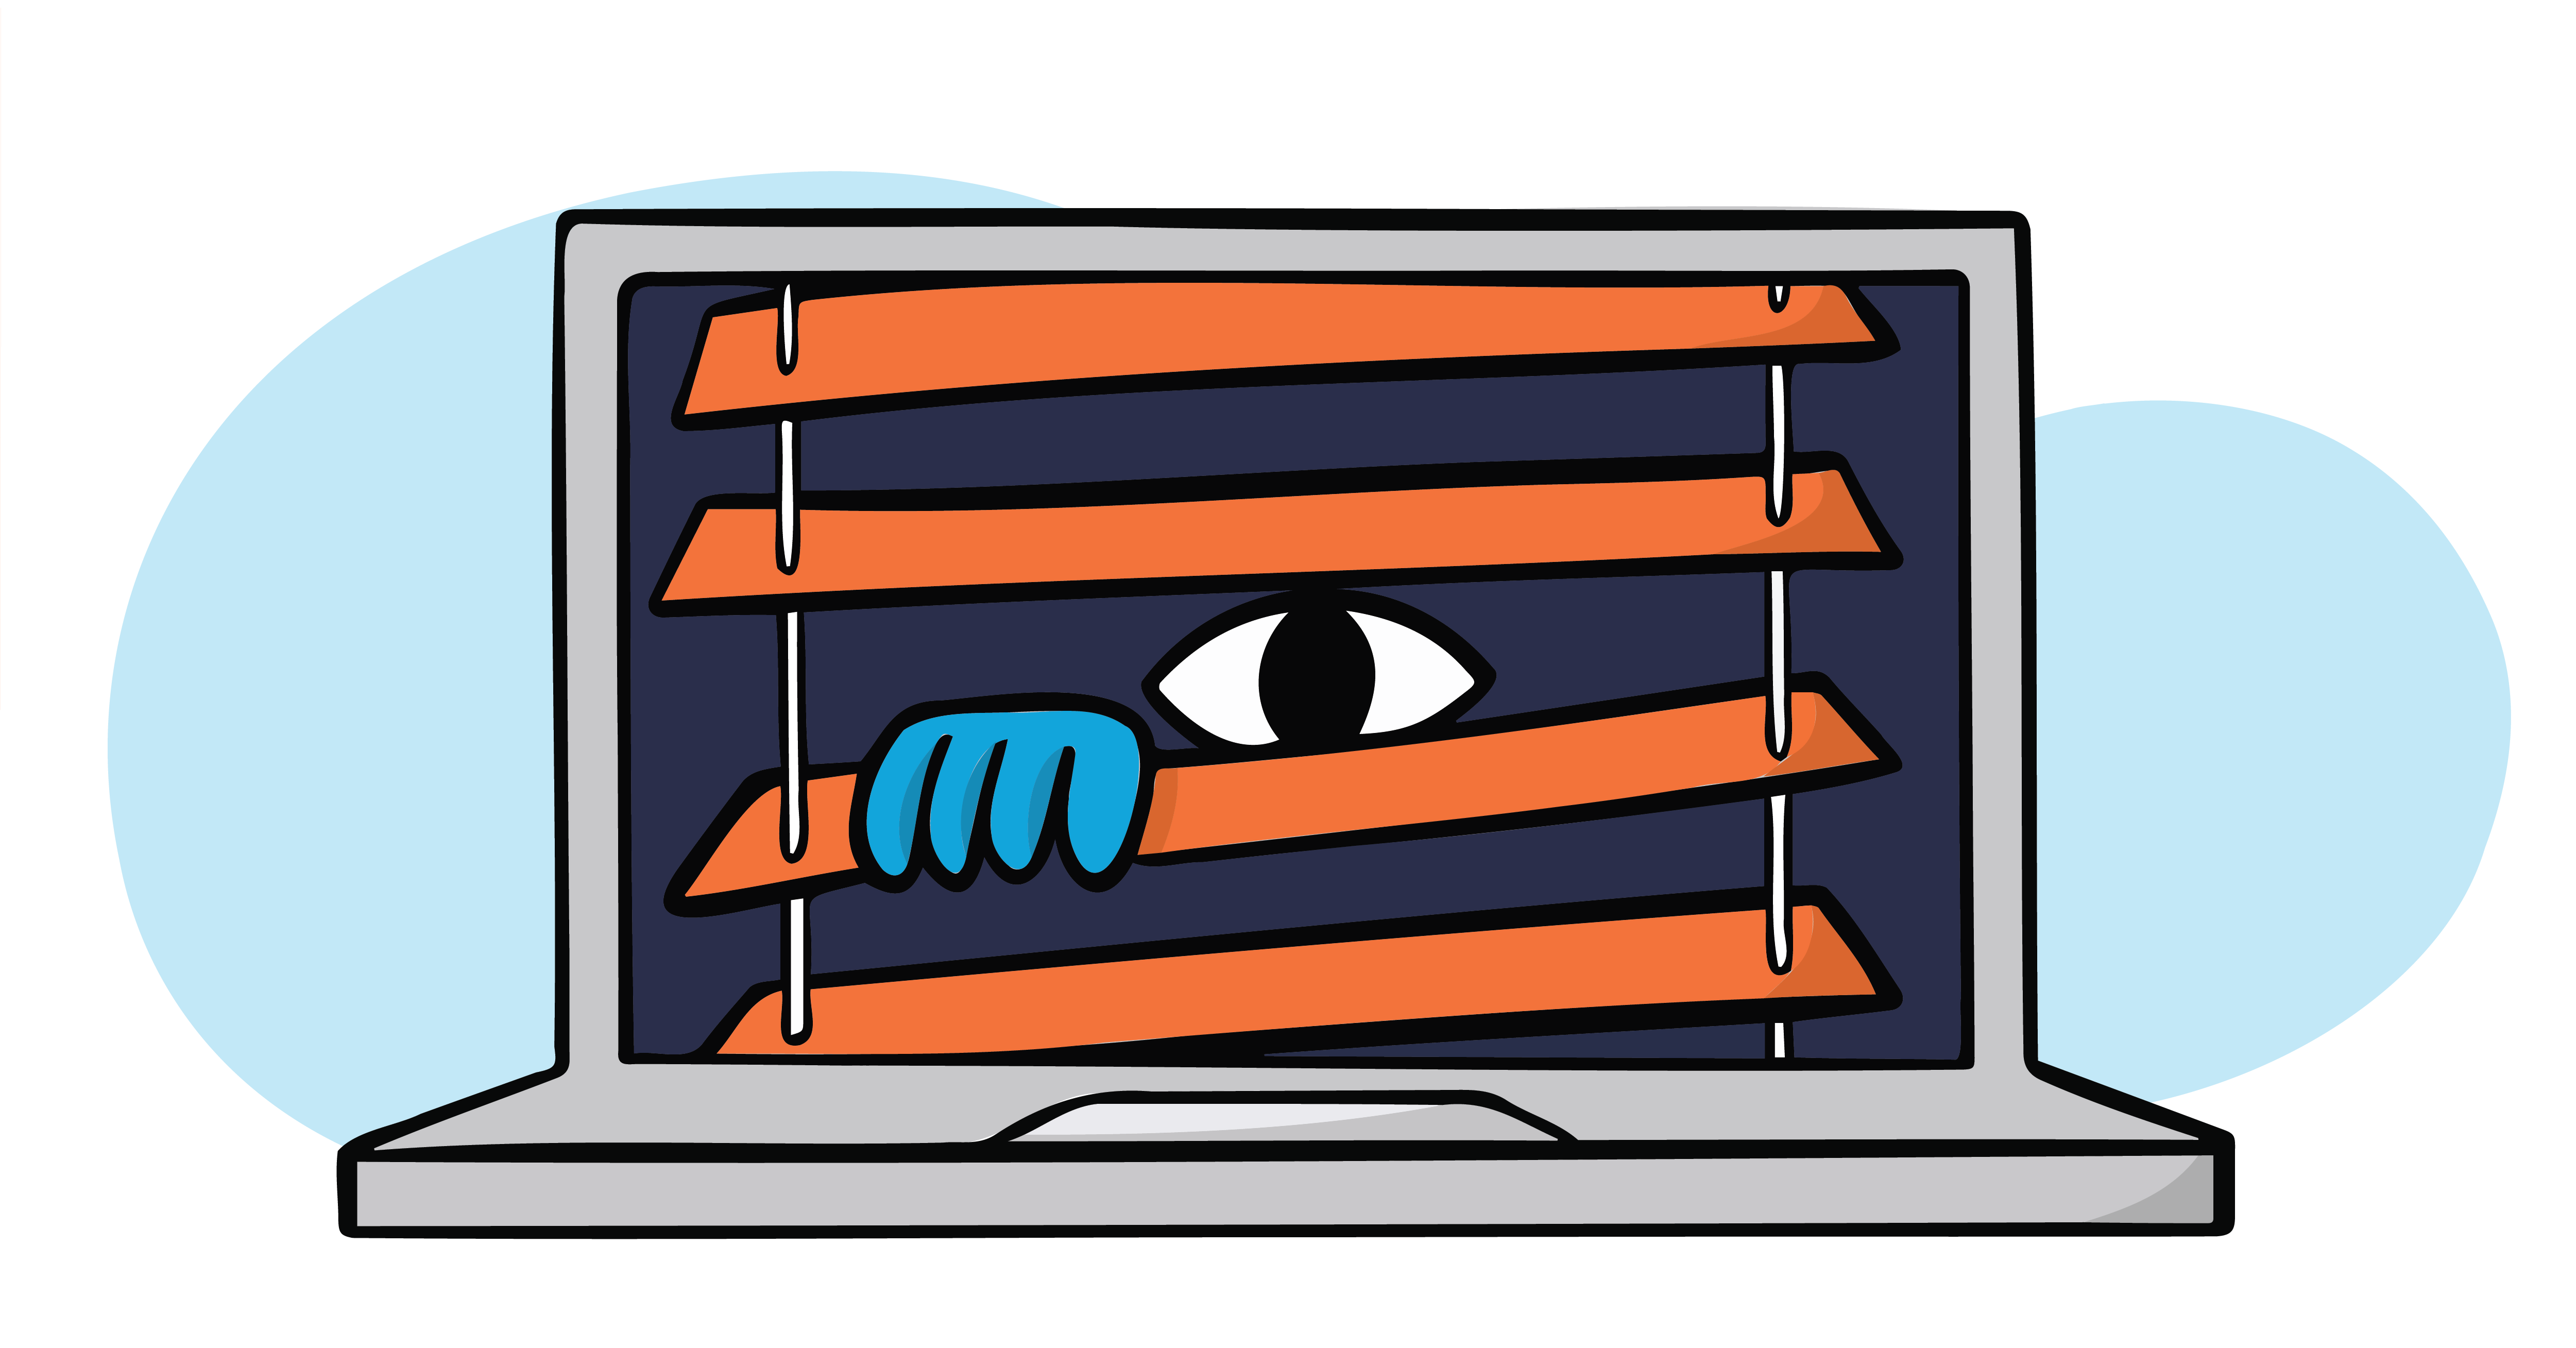 Achter luxaflex bedreigt een spionerend oog vanuit een laptop de online privacy